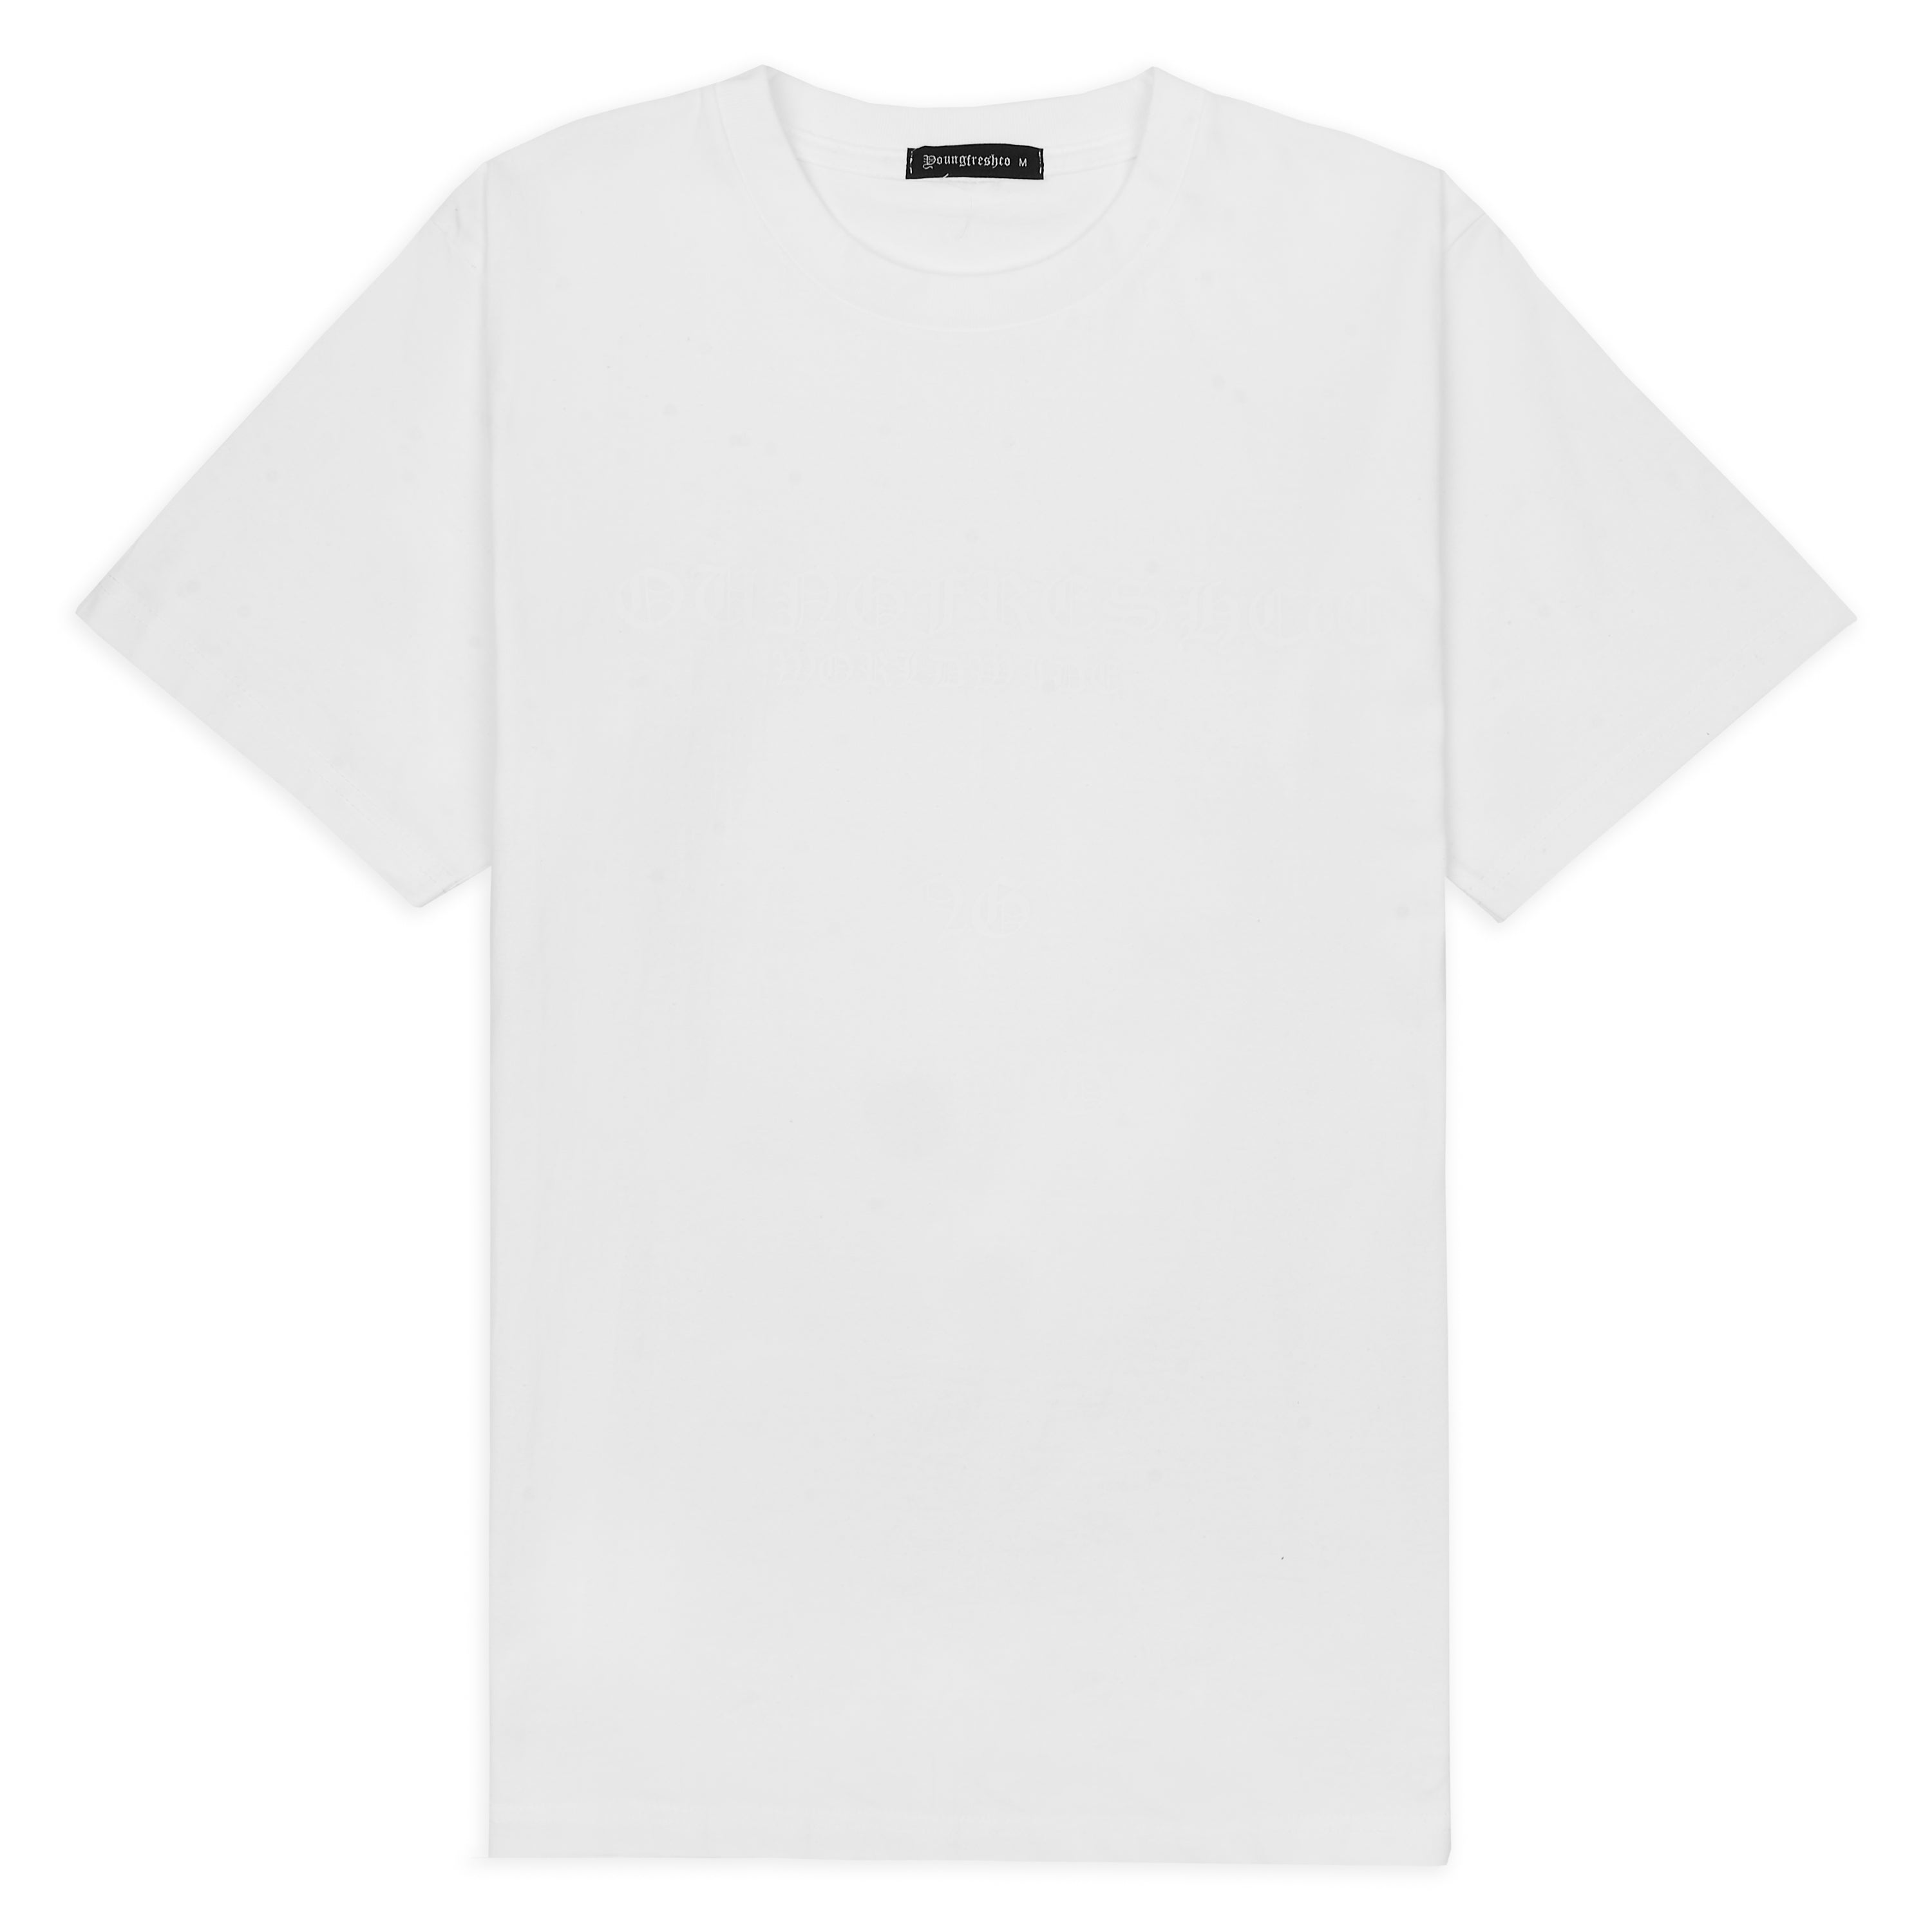 Youngfreshco Worldwide White T-Shirt